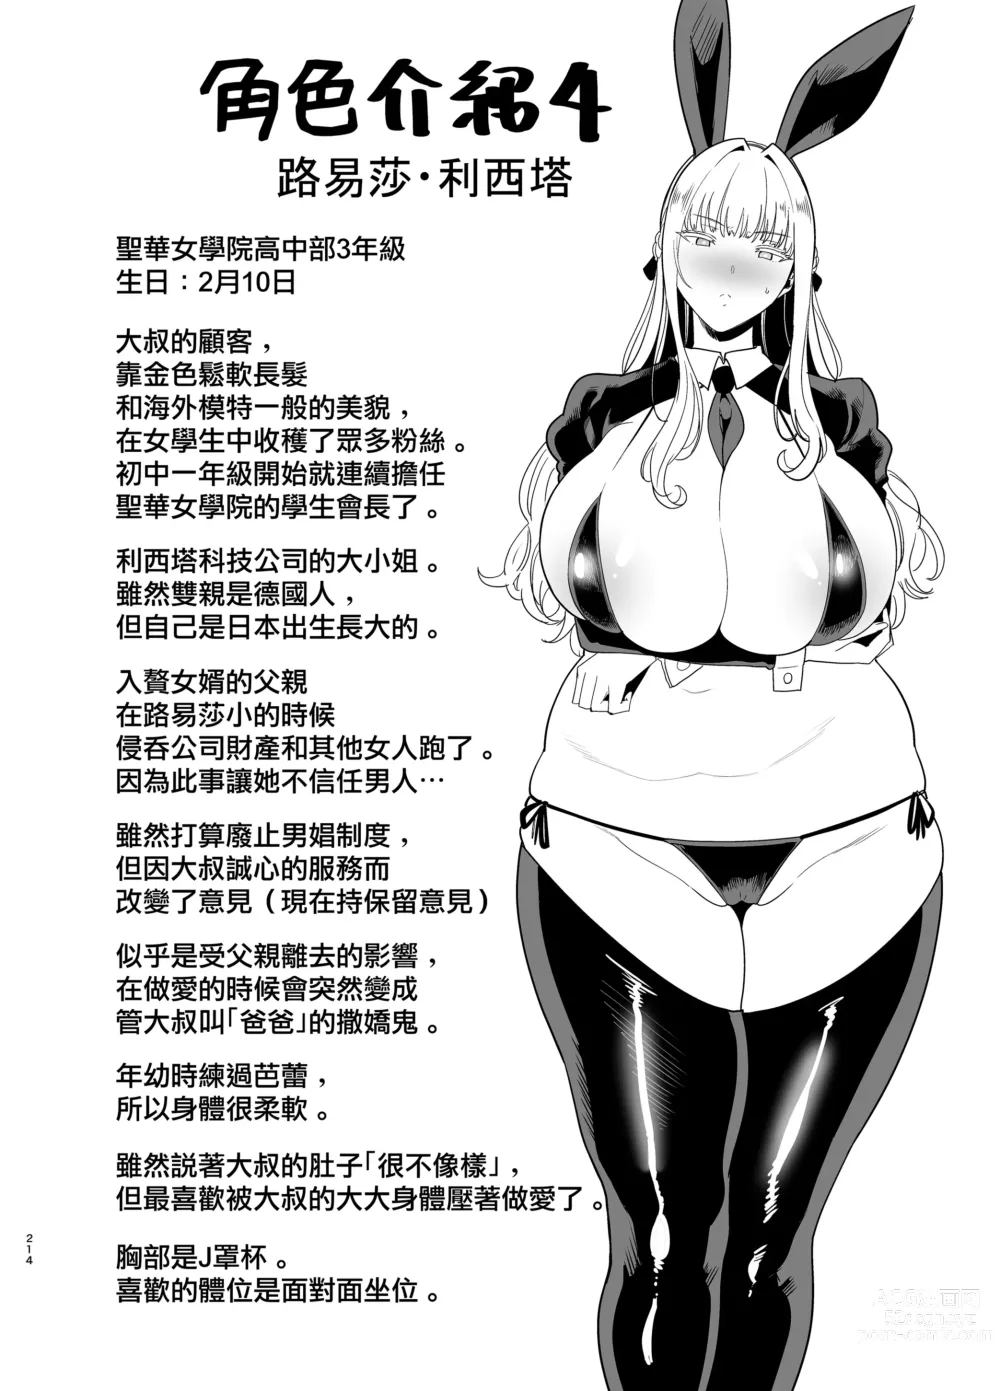 Page 214 of doujinshi Seika Jogakuin Koutoubu Kounin Sao Oji-san